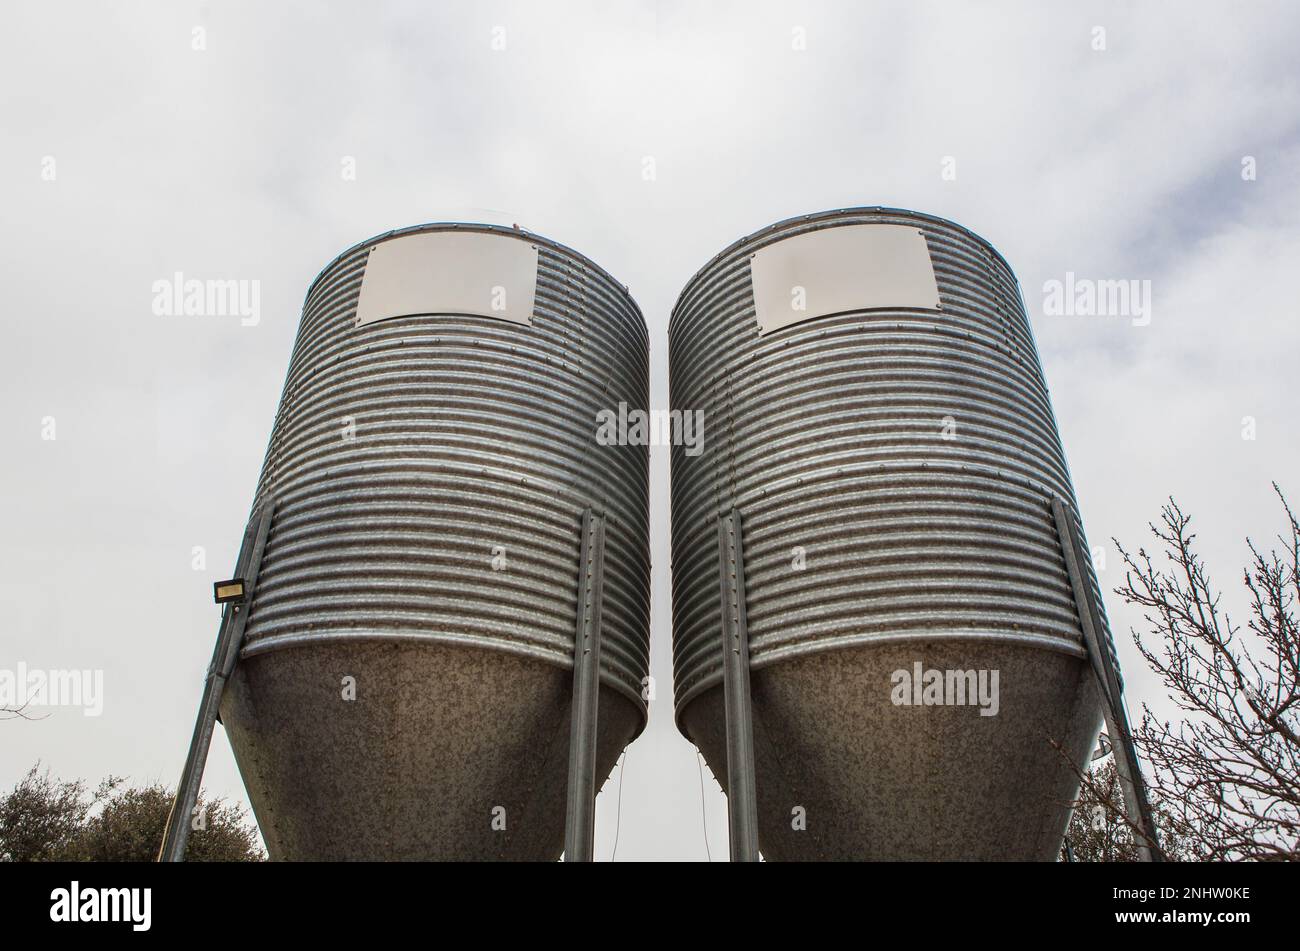 Animal feed silos. Zinc-coated storage for animal husbandry Stock Photo